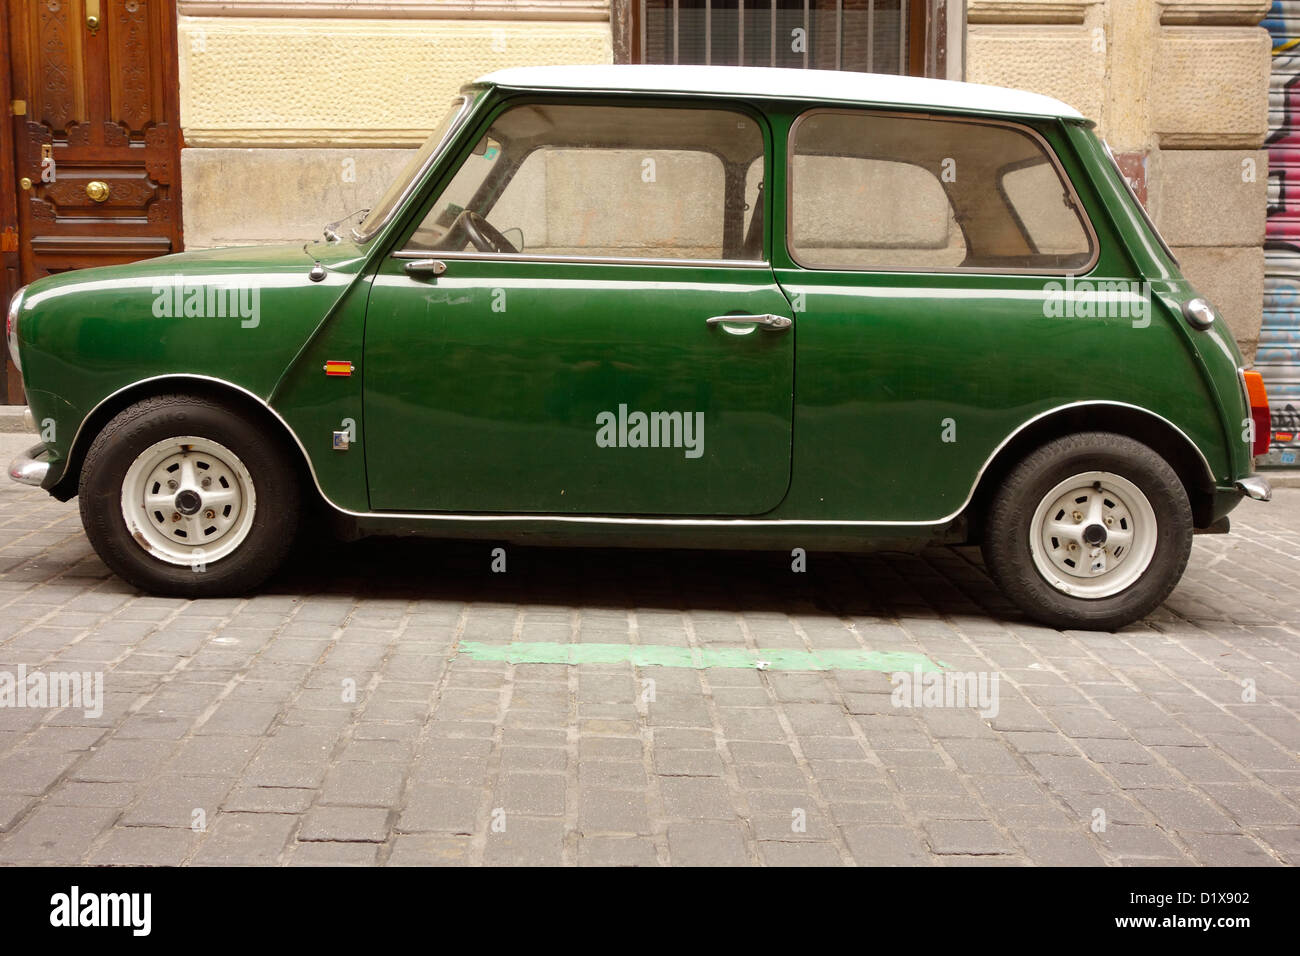 Mini auto madrid spagna vintage automobile green classic di ciottoli Foto Stock